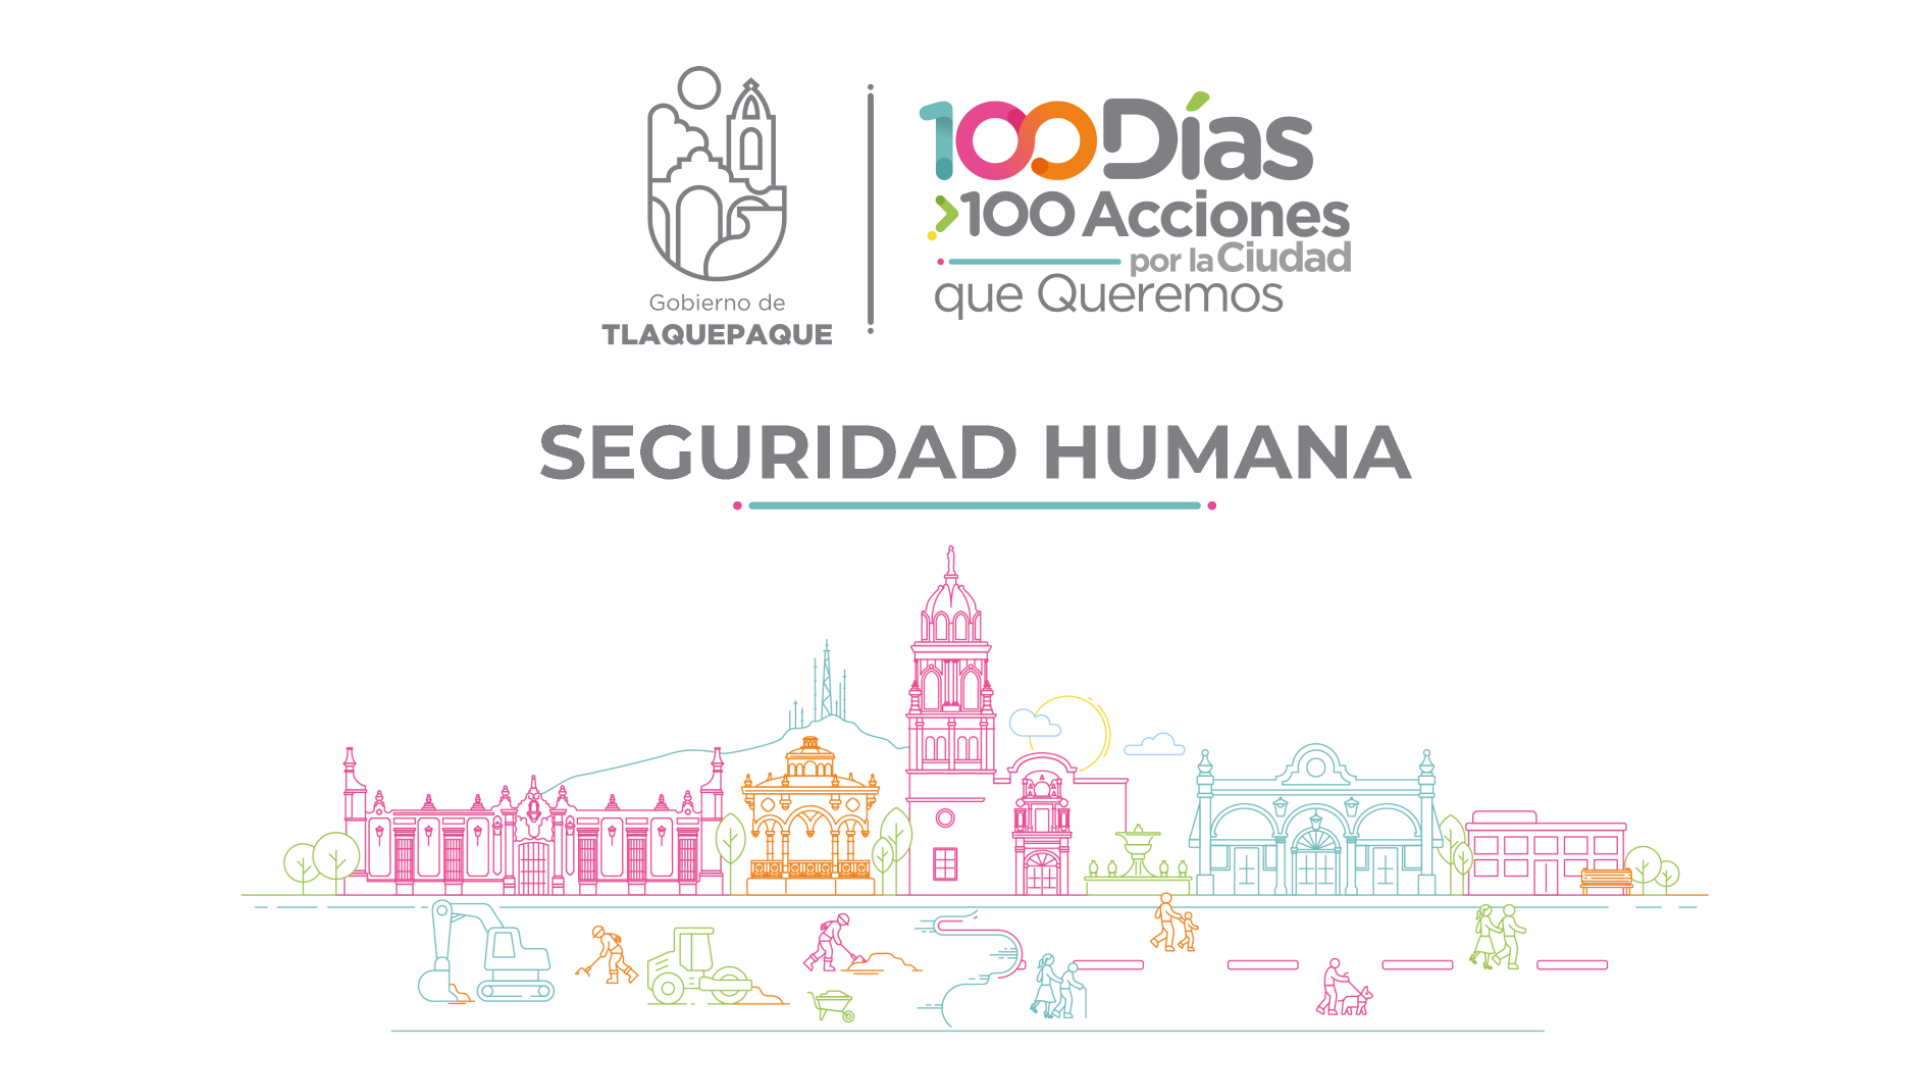 100 días, 100 Acciones por la Ciudad que Queremos